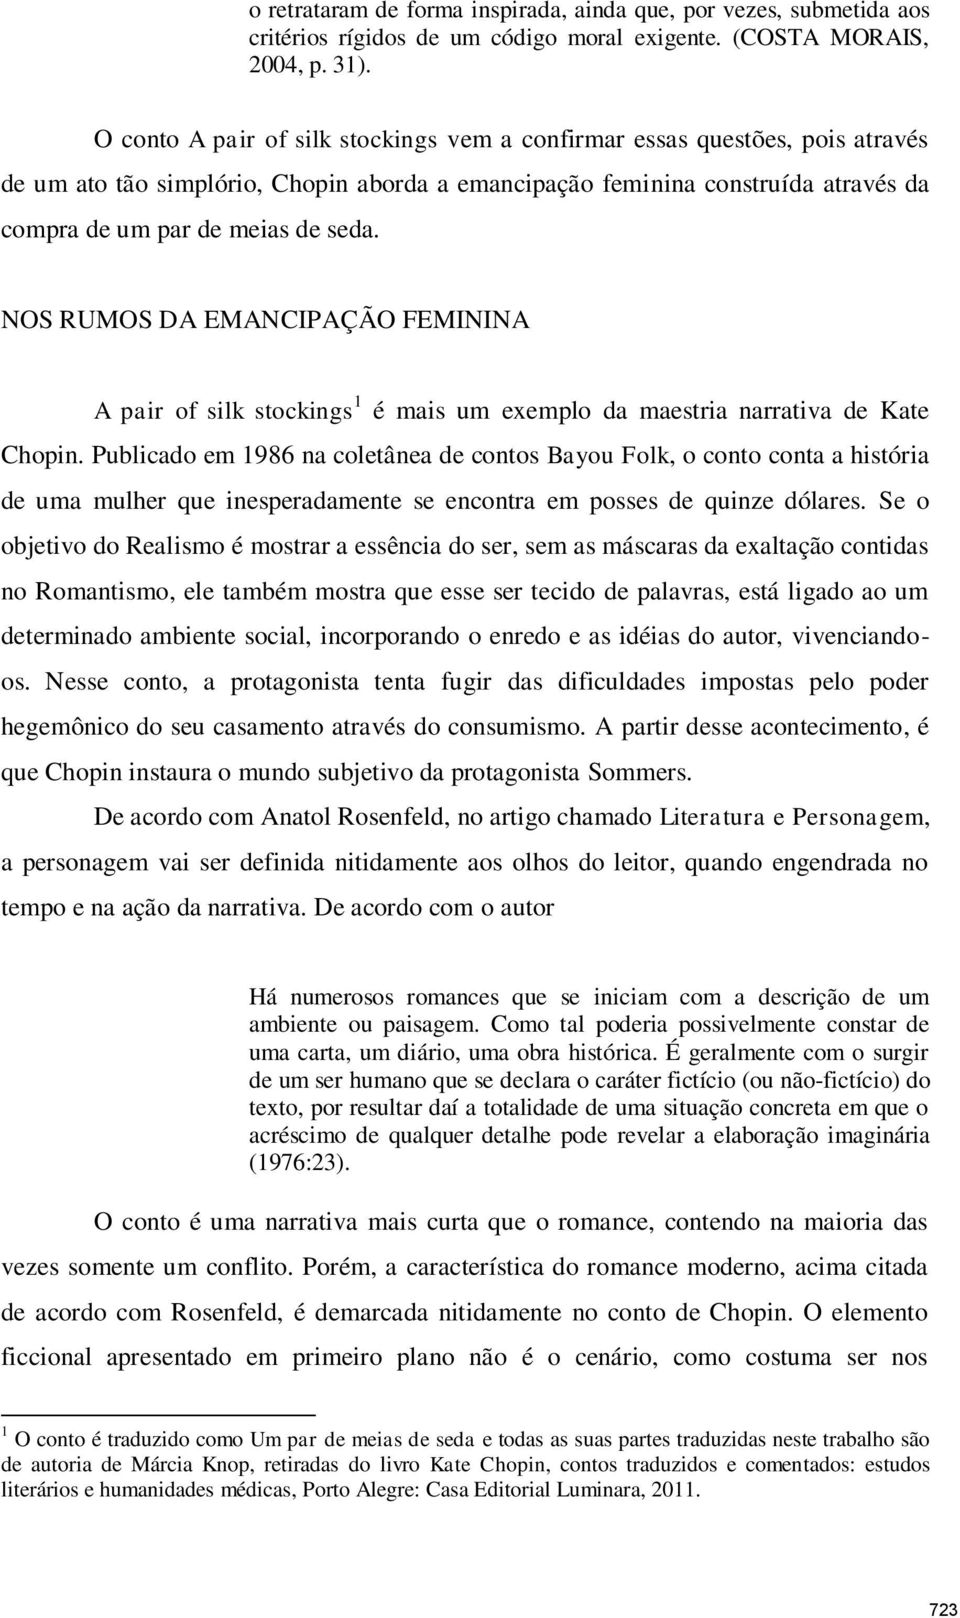 NOS RUMOS DA EMANCIPAÇÃO FEMININA, UMA ANÁLISE NO CONTO A PAIR OF SILK  STOCKINGS DE KATE CHOPIN - PDF Free Download